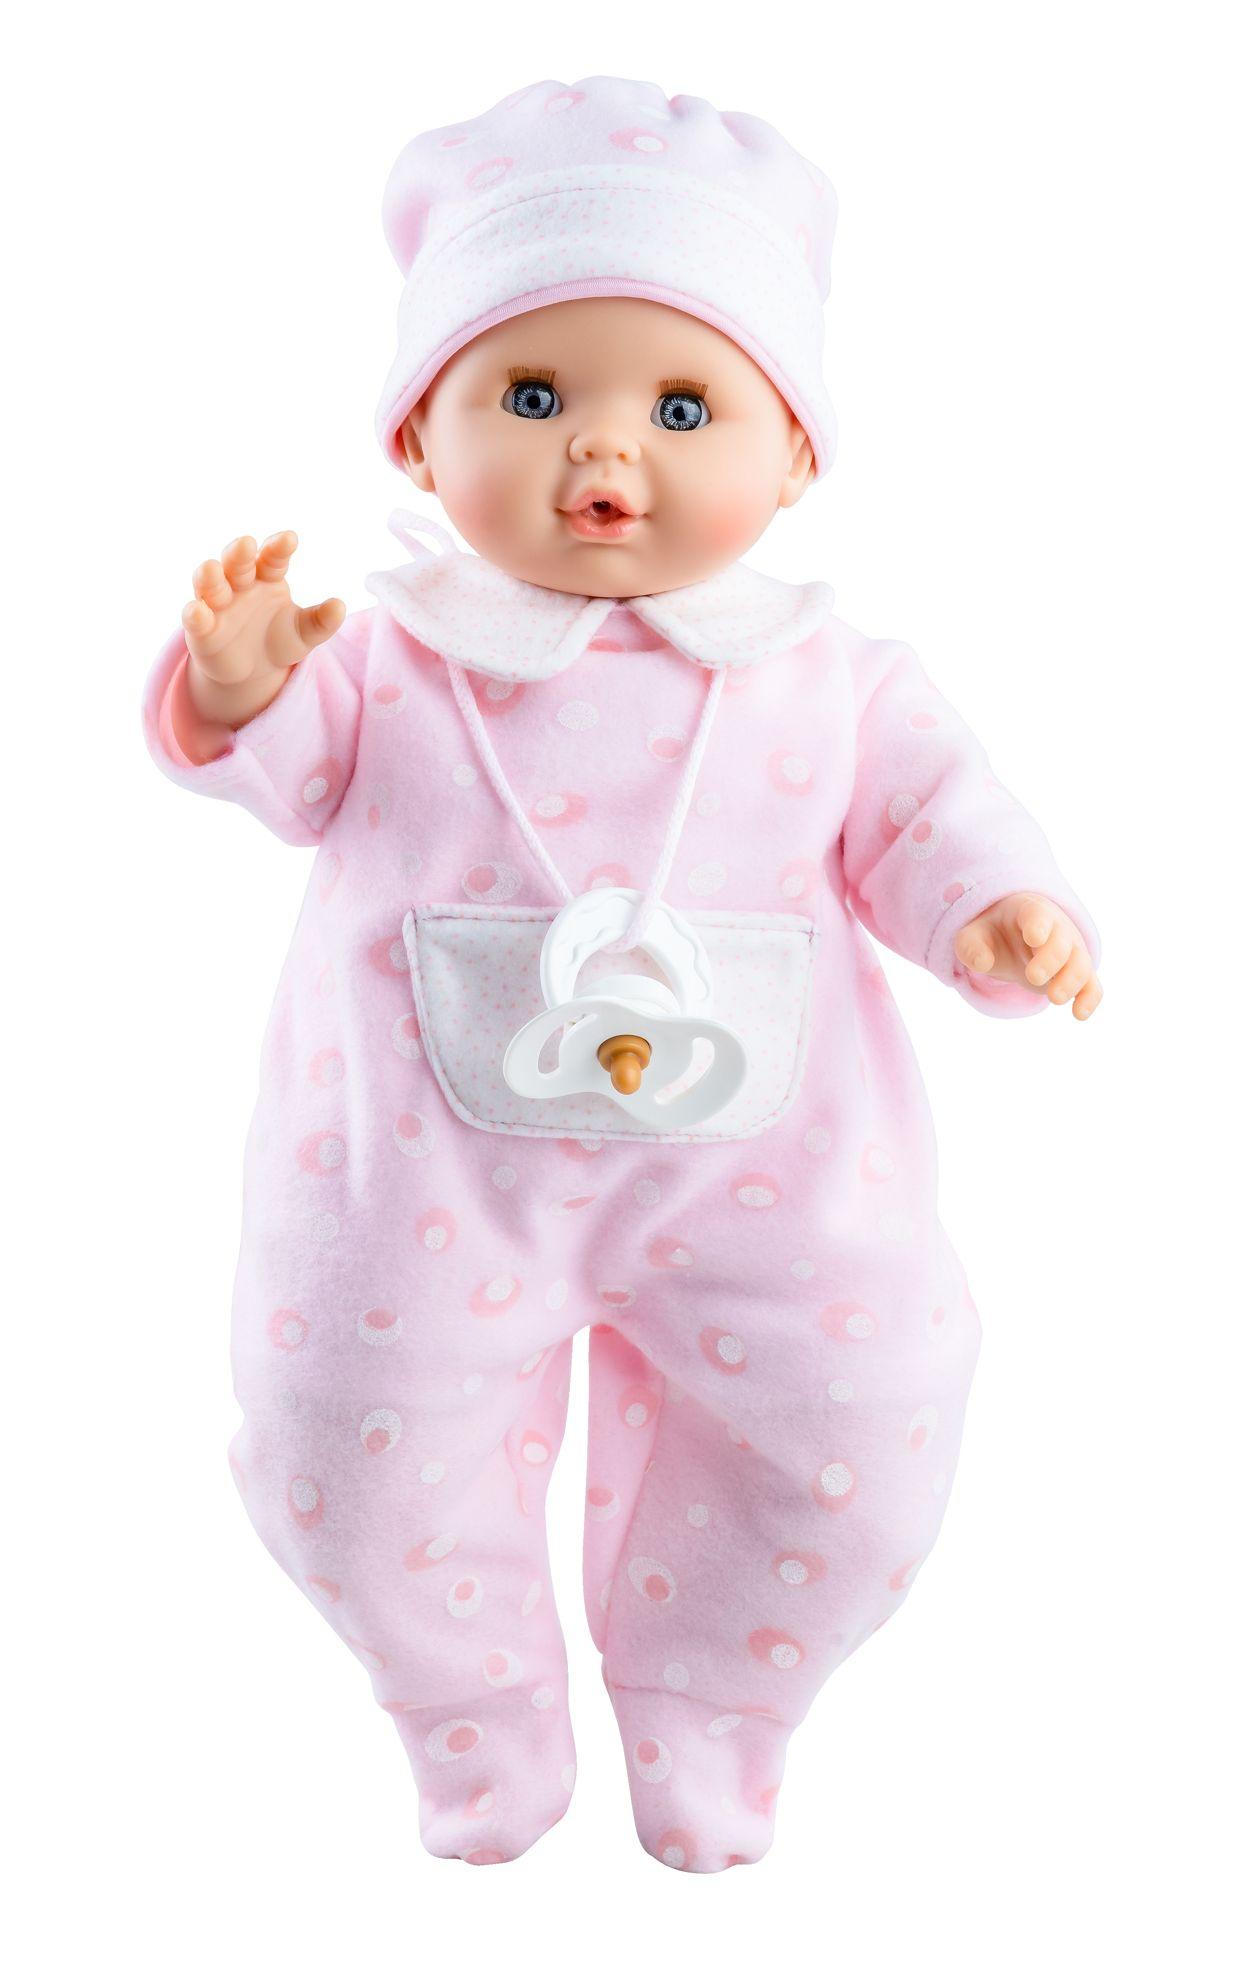 Realistické miminko - holčička Sonia v růžovém od firmy Paola Reina